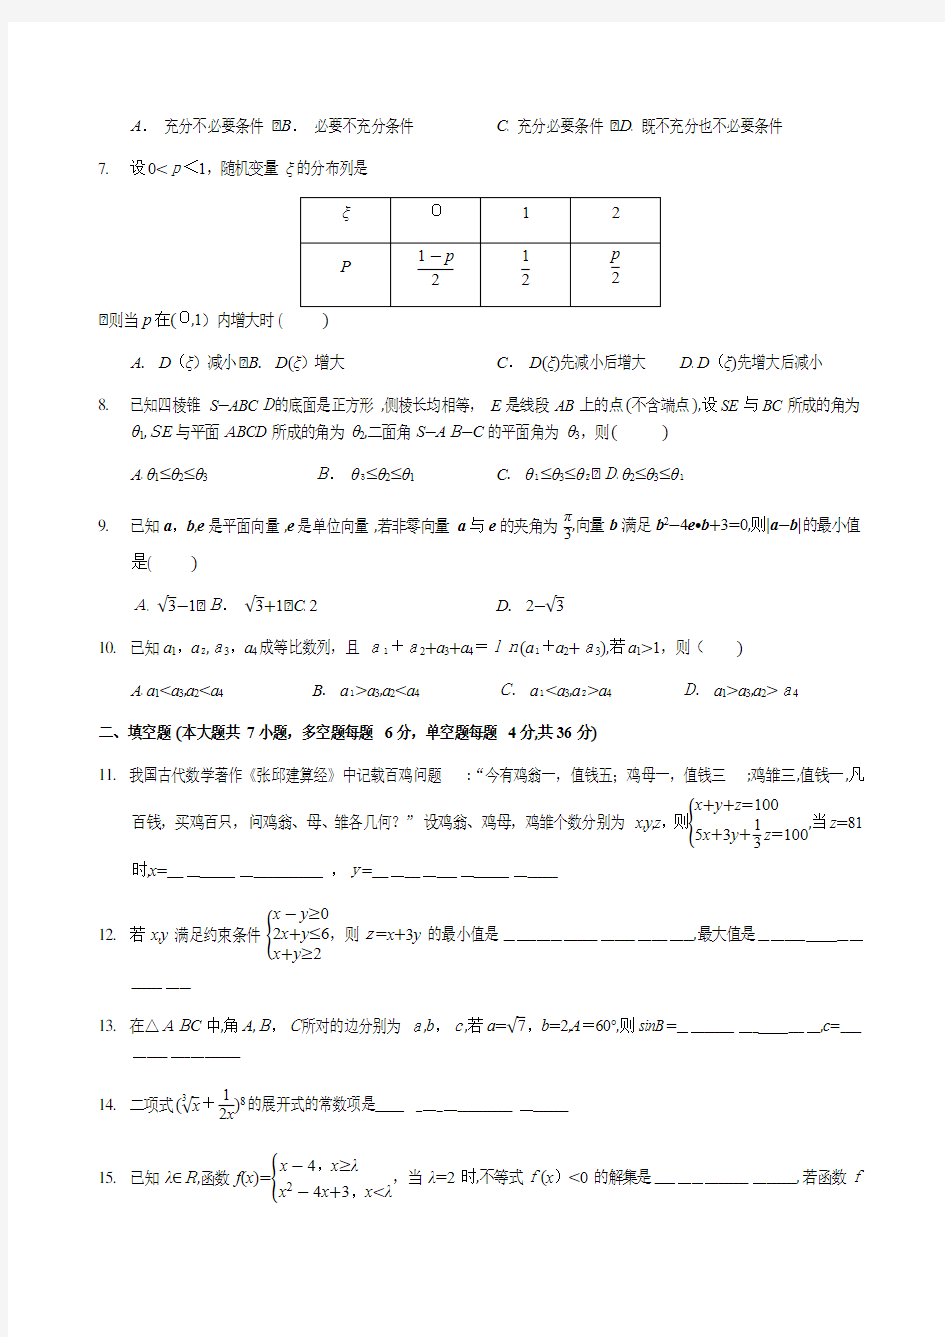 2018浙江高考数学试题及其官方标准答案